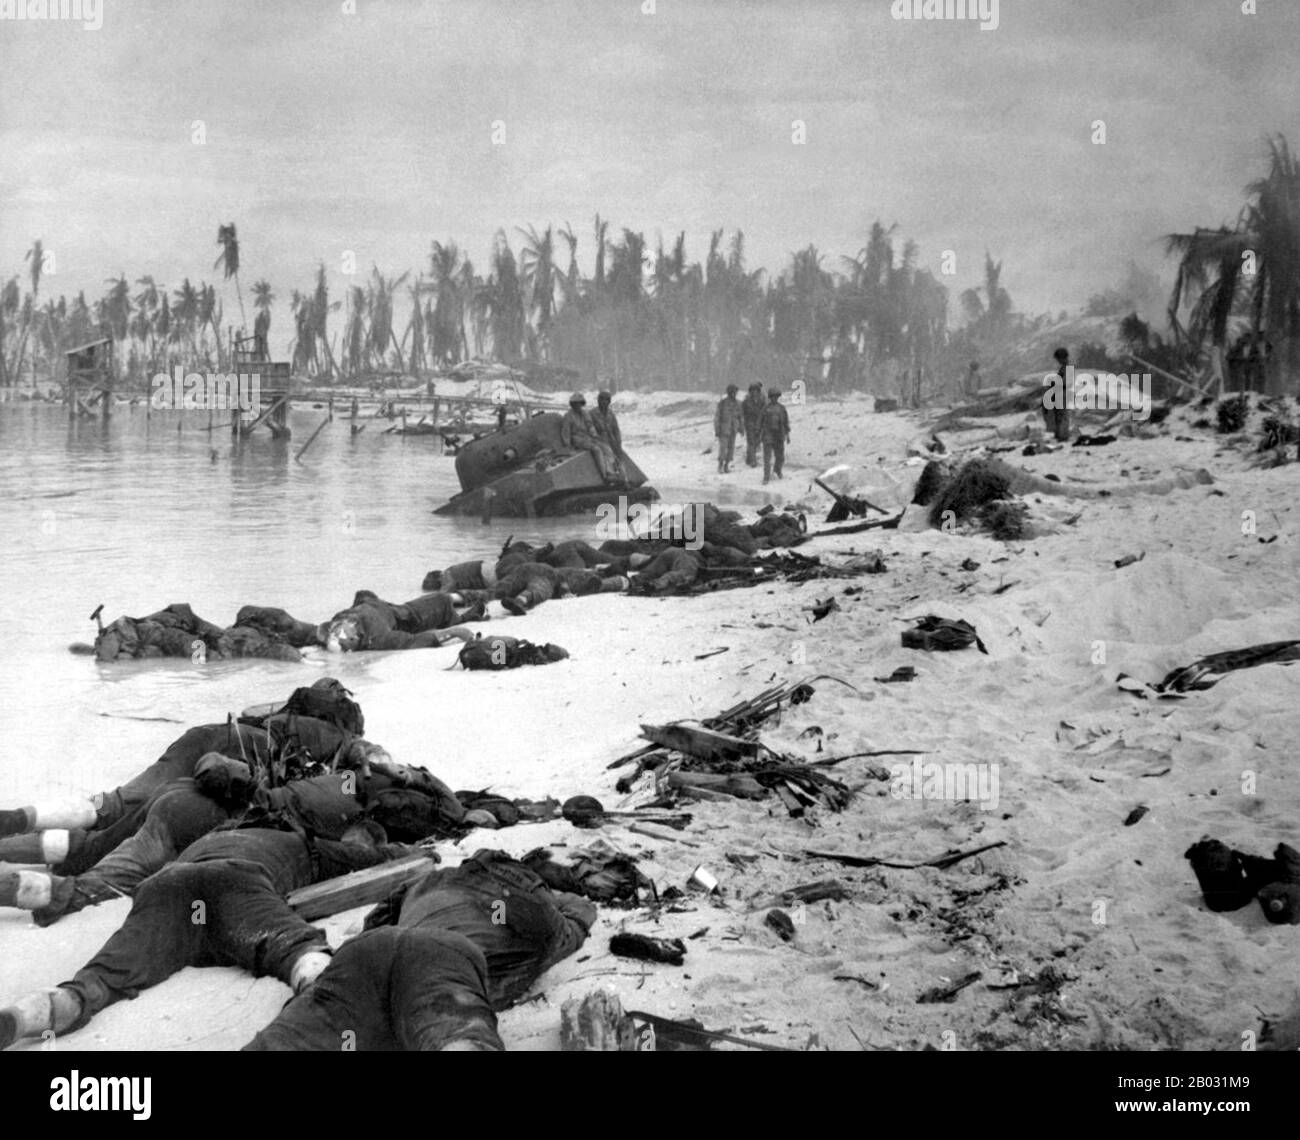 Die Schlacht von Tarawa war eine Schlacht im Pazifiktheater des zweiten Weltkriegs, die vom 20. November bis 23. November 1943 ausgetragen wurde. Sie fand auf dem Tarawa-Atoll auf den Gilbert-Inseln statt. Fast 6.400 Japaner, Koreaner und Amerikaner starben bei den Kämpfen, hauptsächlich auf und um die kleine Insel Betio im äußersten Südwesten des Tarawa-Atolls. Die Schlacht von Tarawa war die erste amerikanische Offensive im kritischen Zentralpazifik. Es war auch das erste Mal im Krieg, dass die Vereinigten Staaten ernsthaften japanischen Widerstand gegen eine amphibische Landung ausgesetzt waren. Frühere Landungen trafen nur wenig oder gar nicht ein Stockfoto